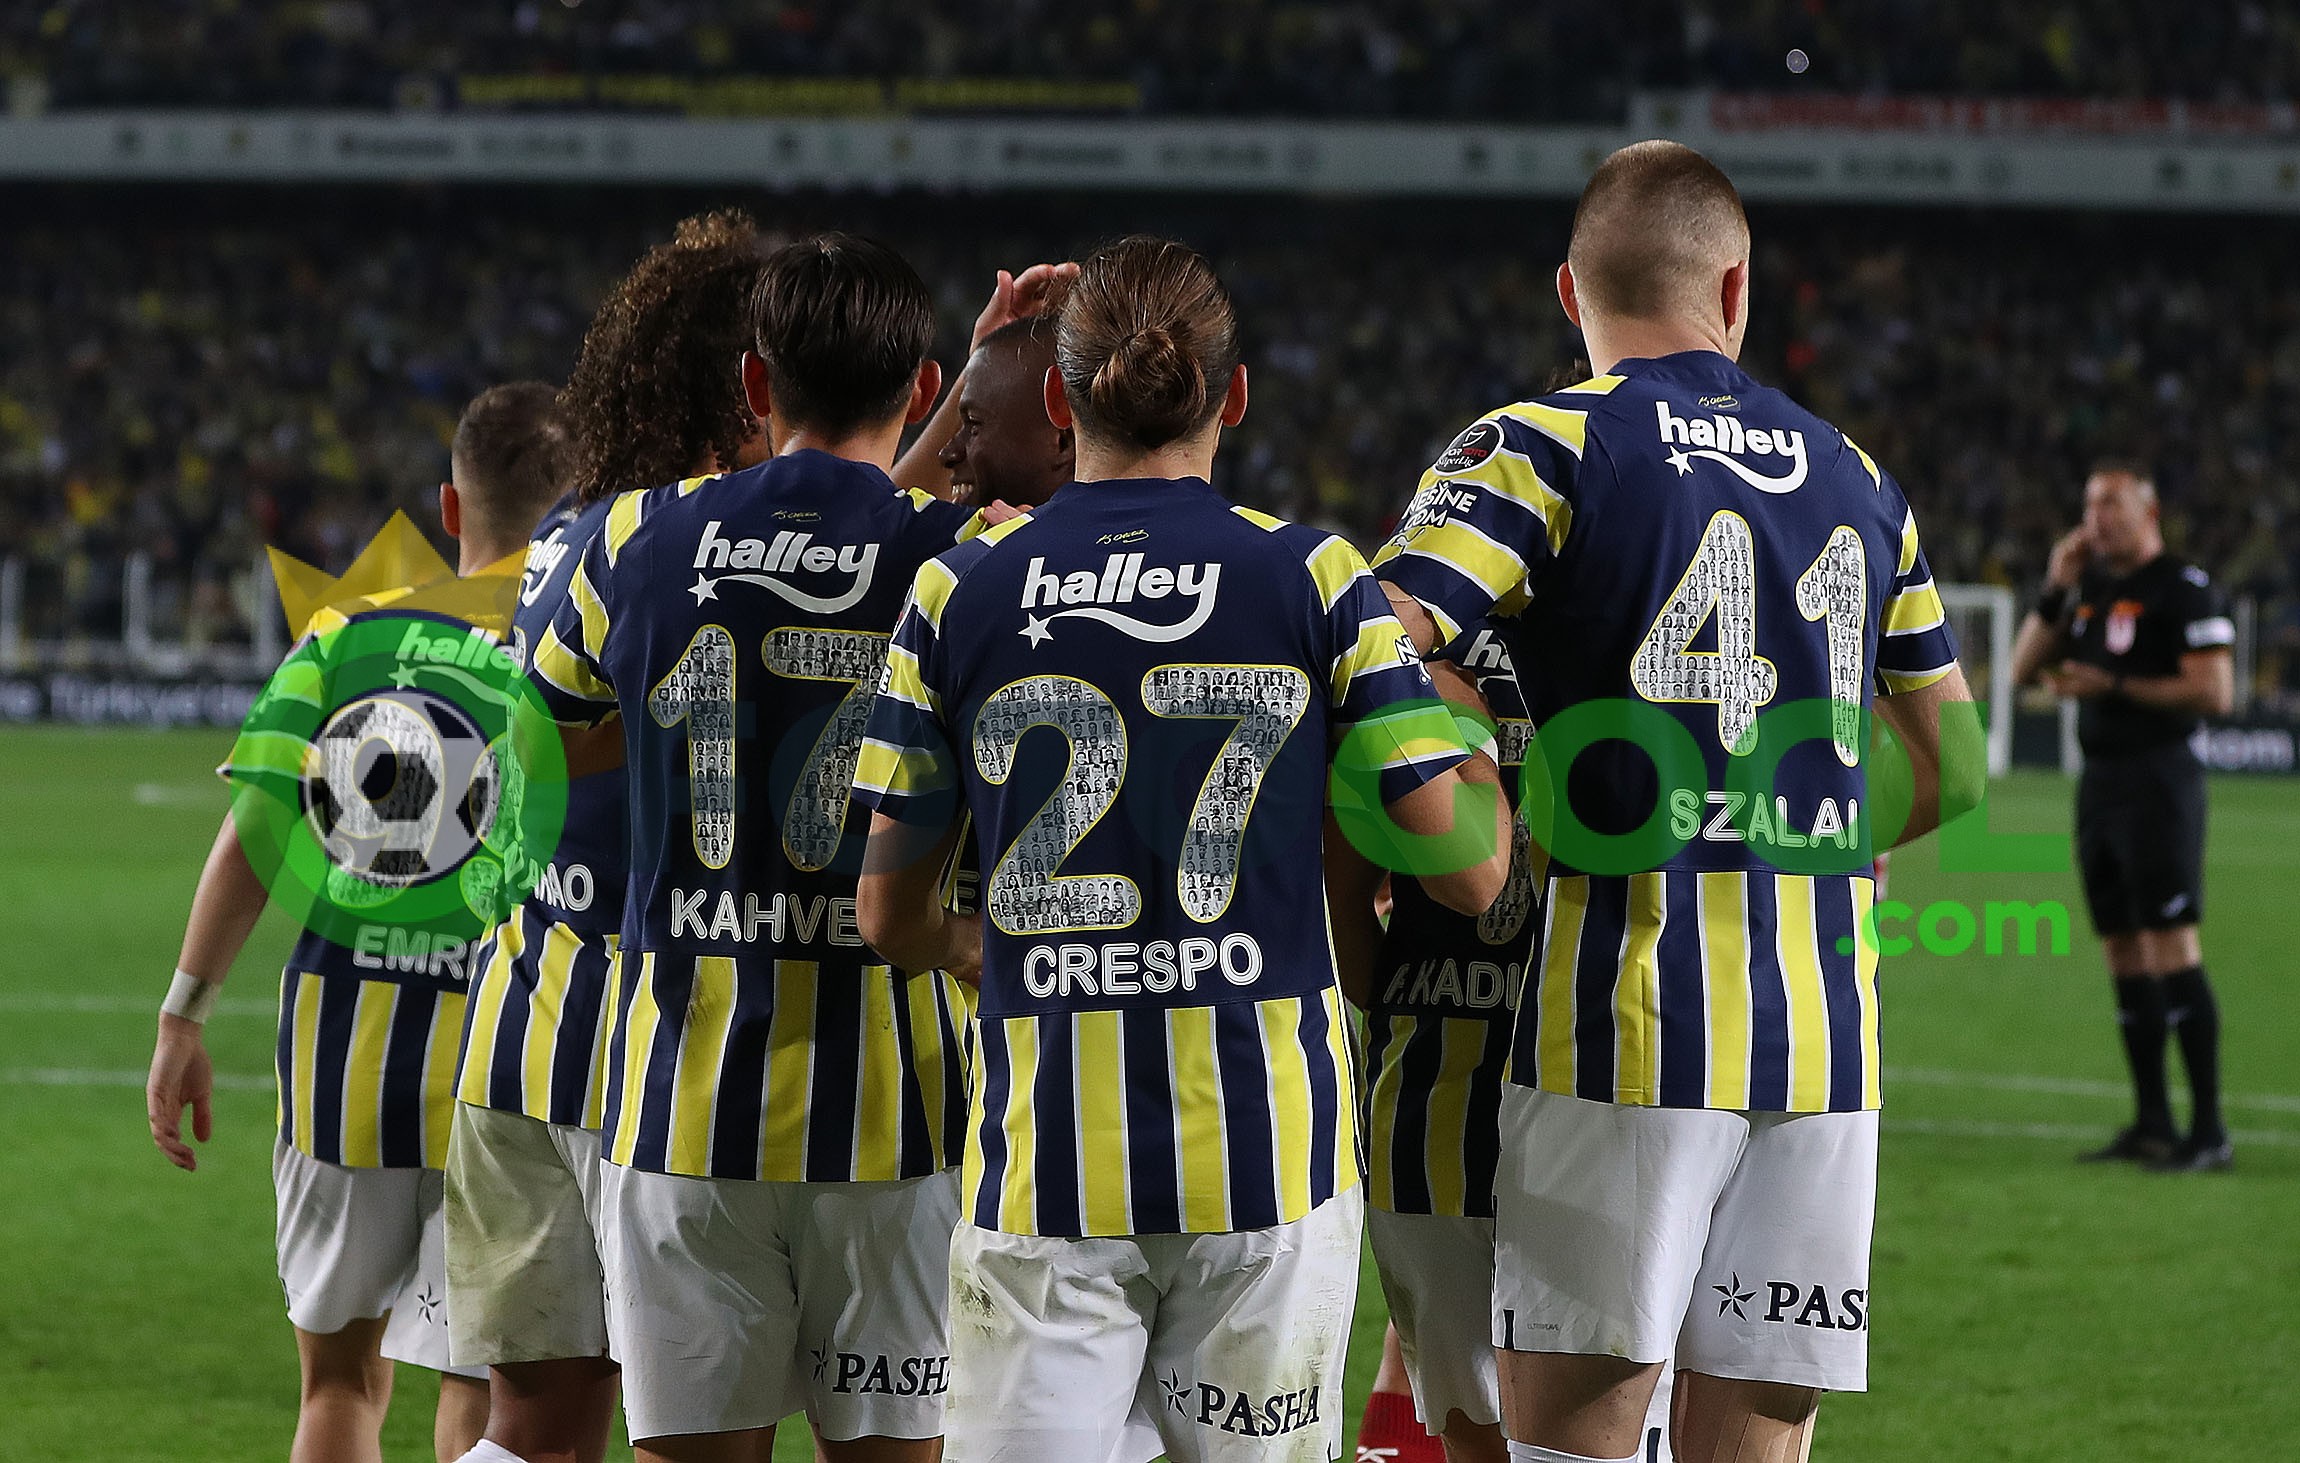 Lider Fenerbahçe yoluna devam etti 1-0